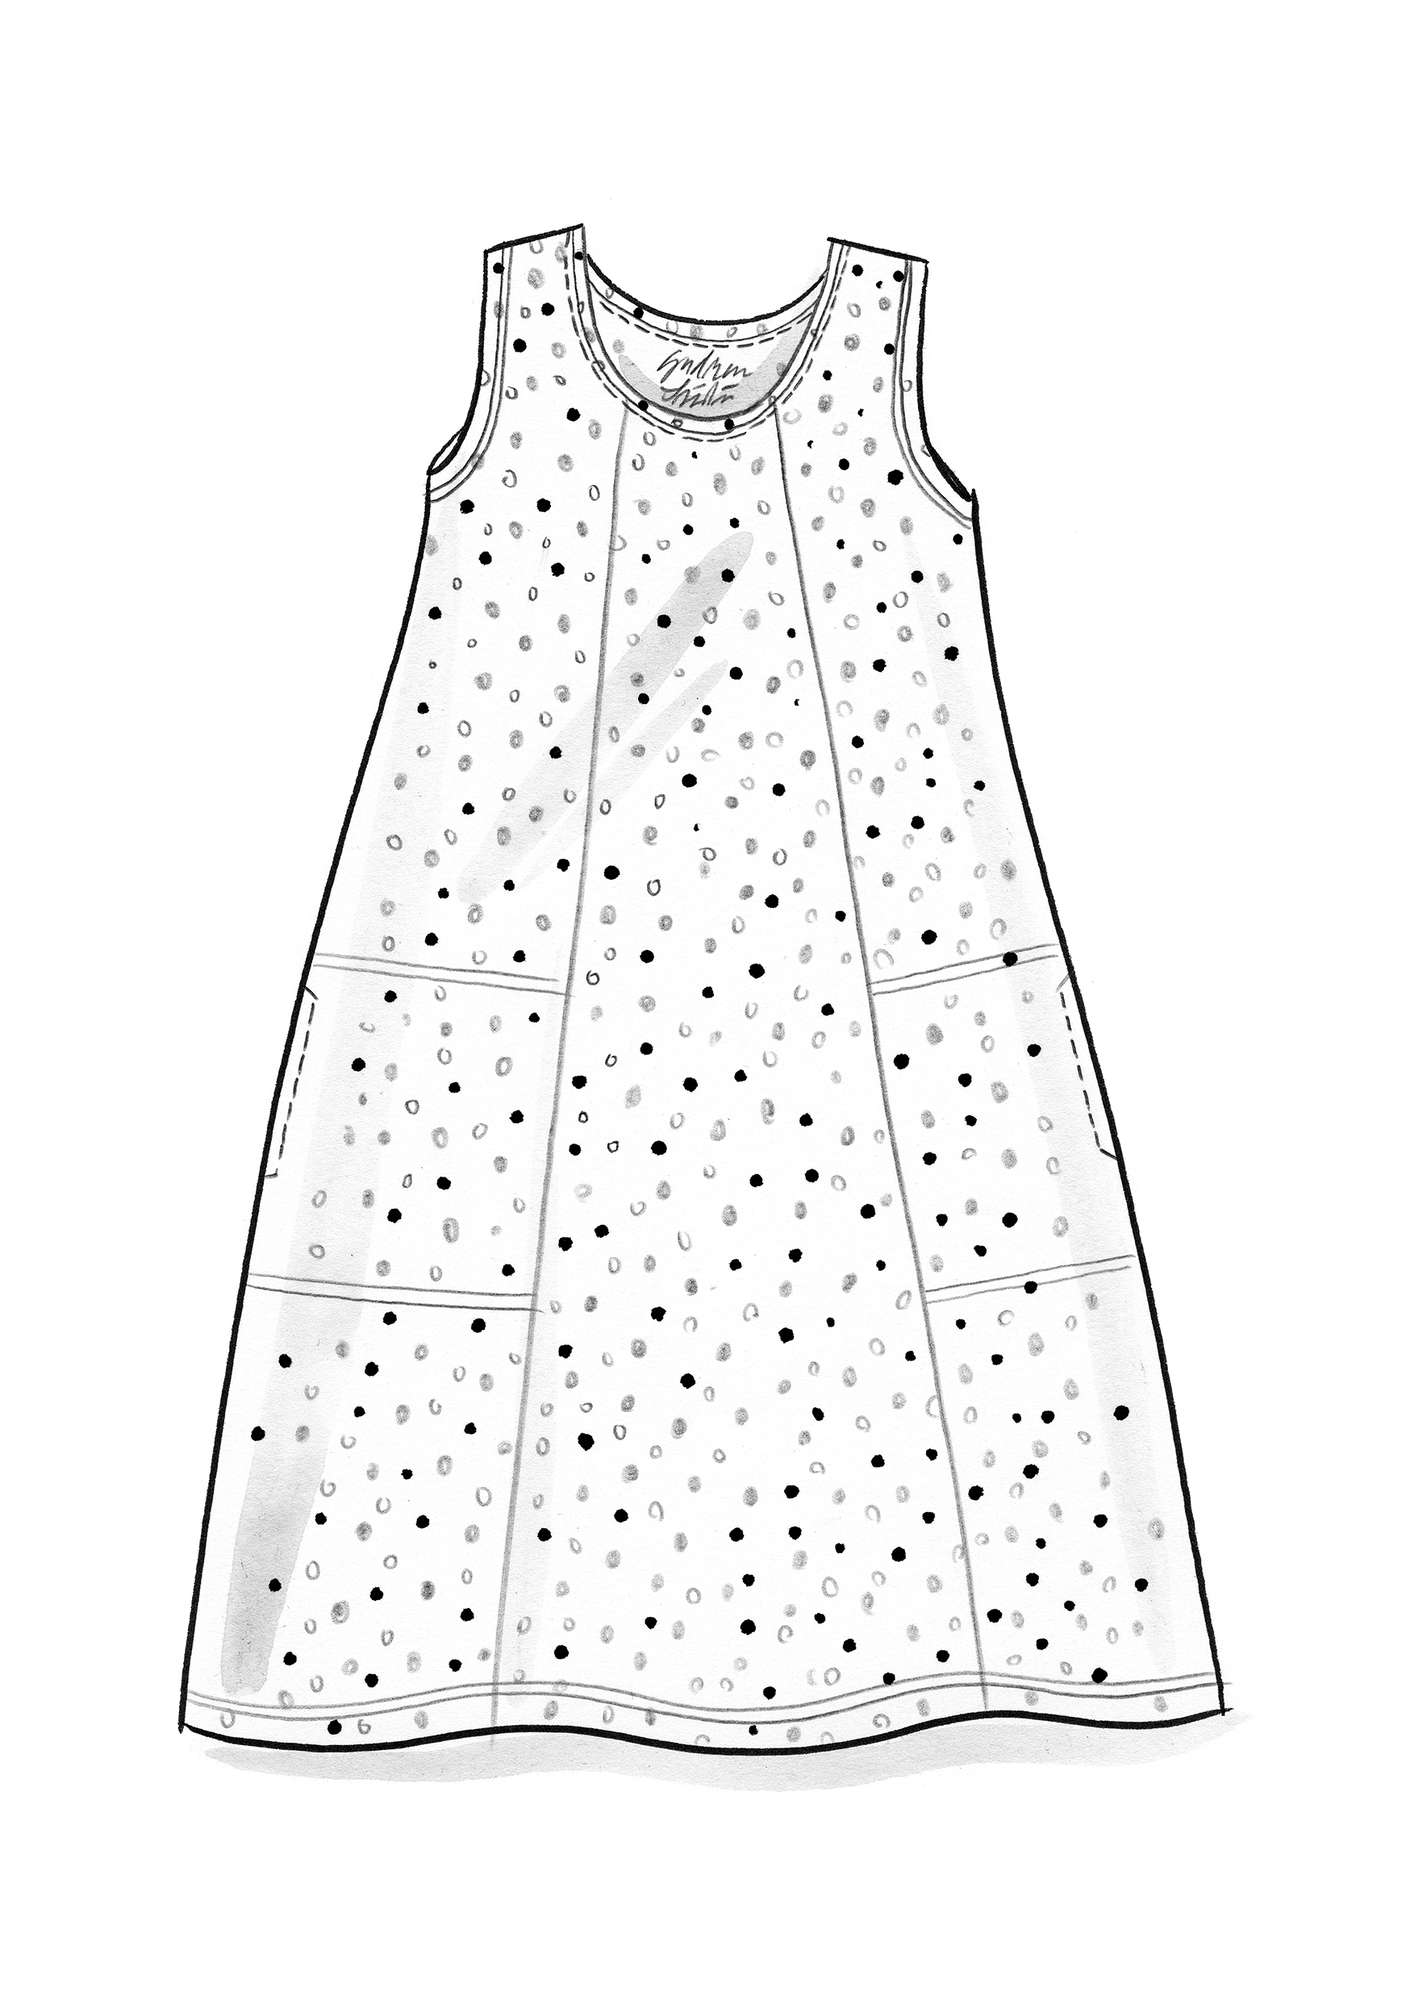 Trikåklänning  Iliana  i ekologisk bomull/elastan svart/mönstrad